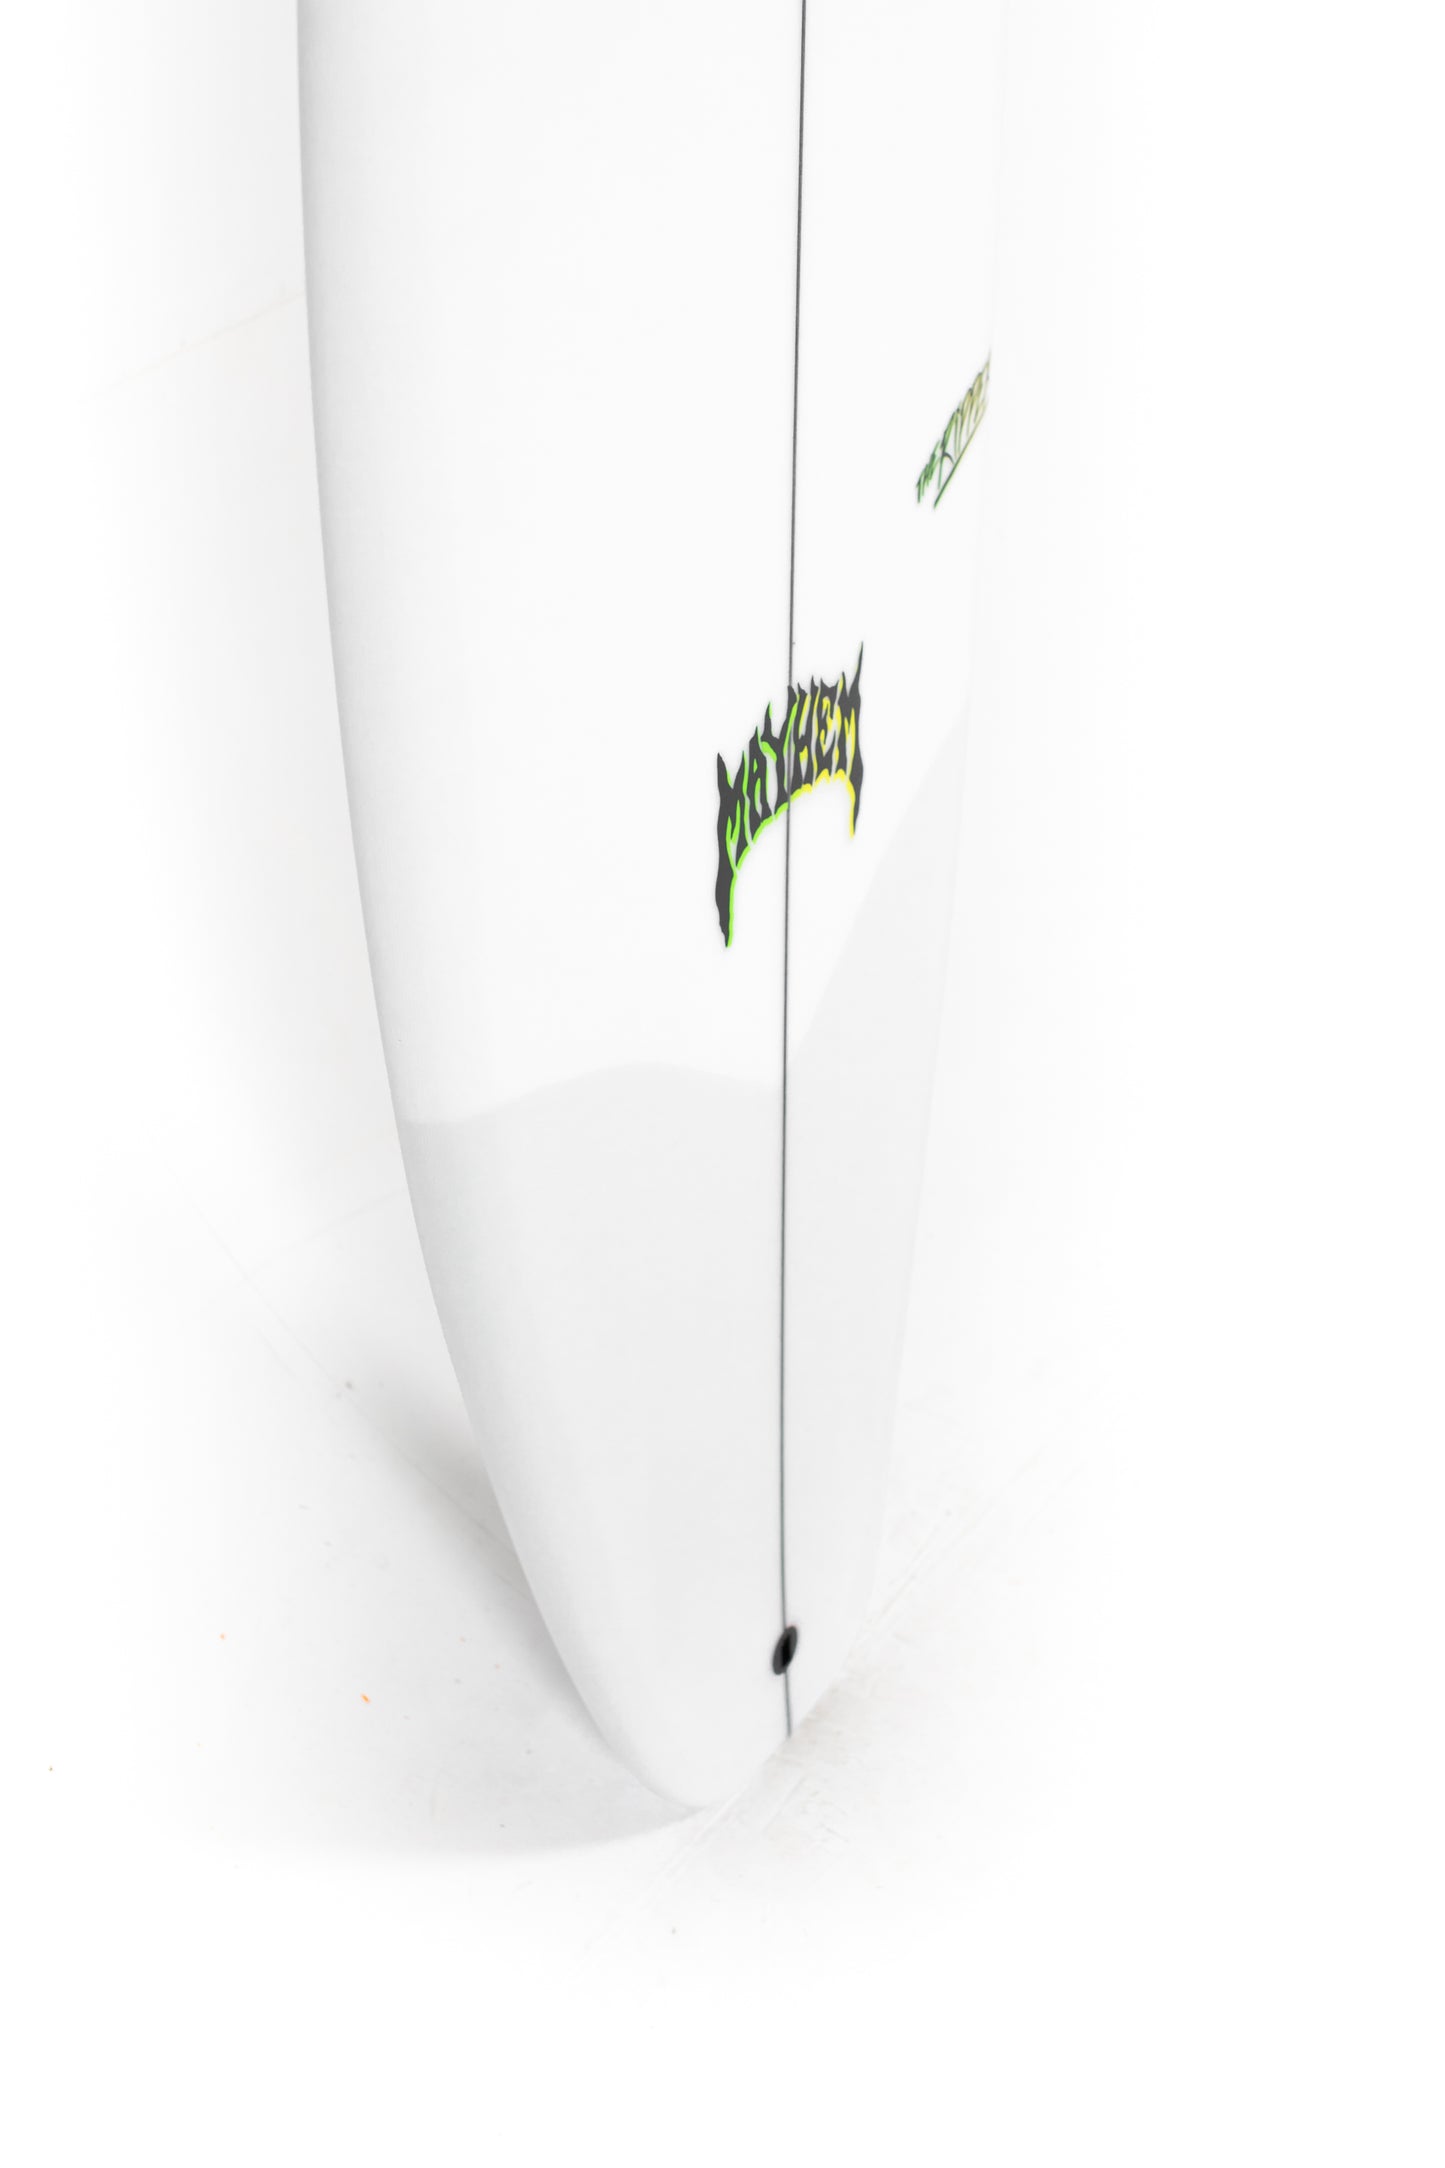 
                  
                    Pukas Surf Shop - Lost Surfboard - THE RIPPER by Matt Biolos - 6'0" x 20.25" x 2.53 - 33.50L - MH19097
                  
                